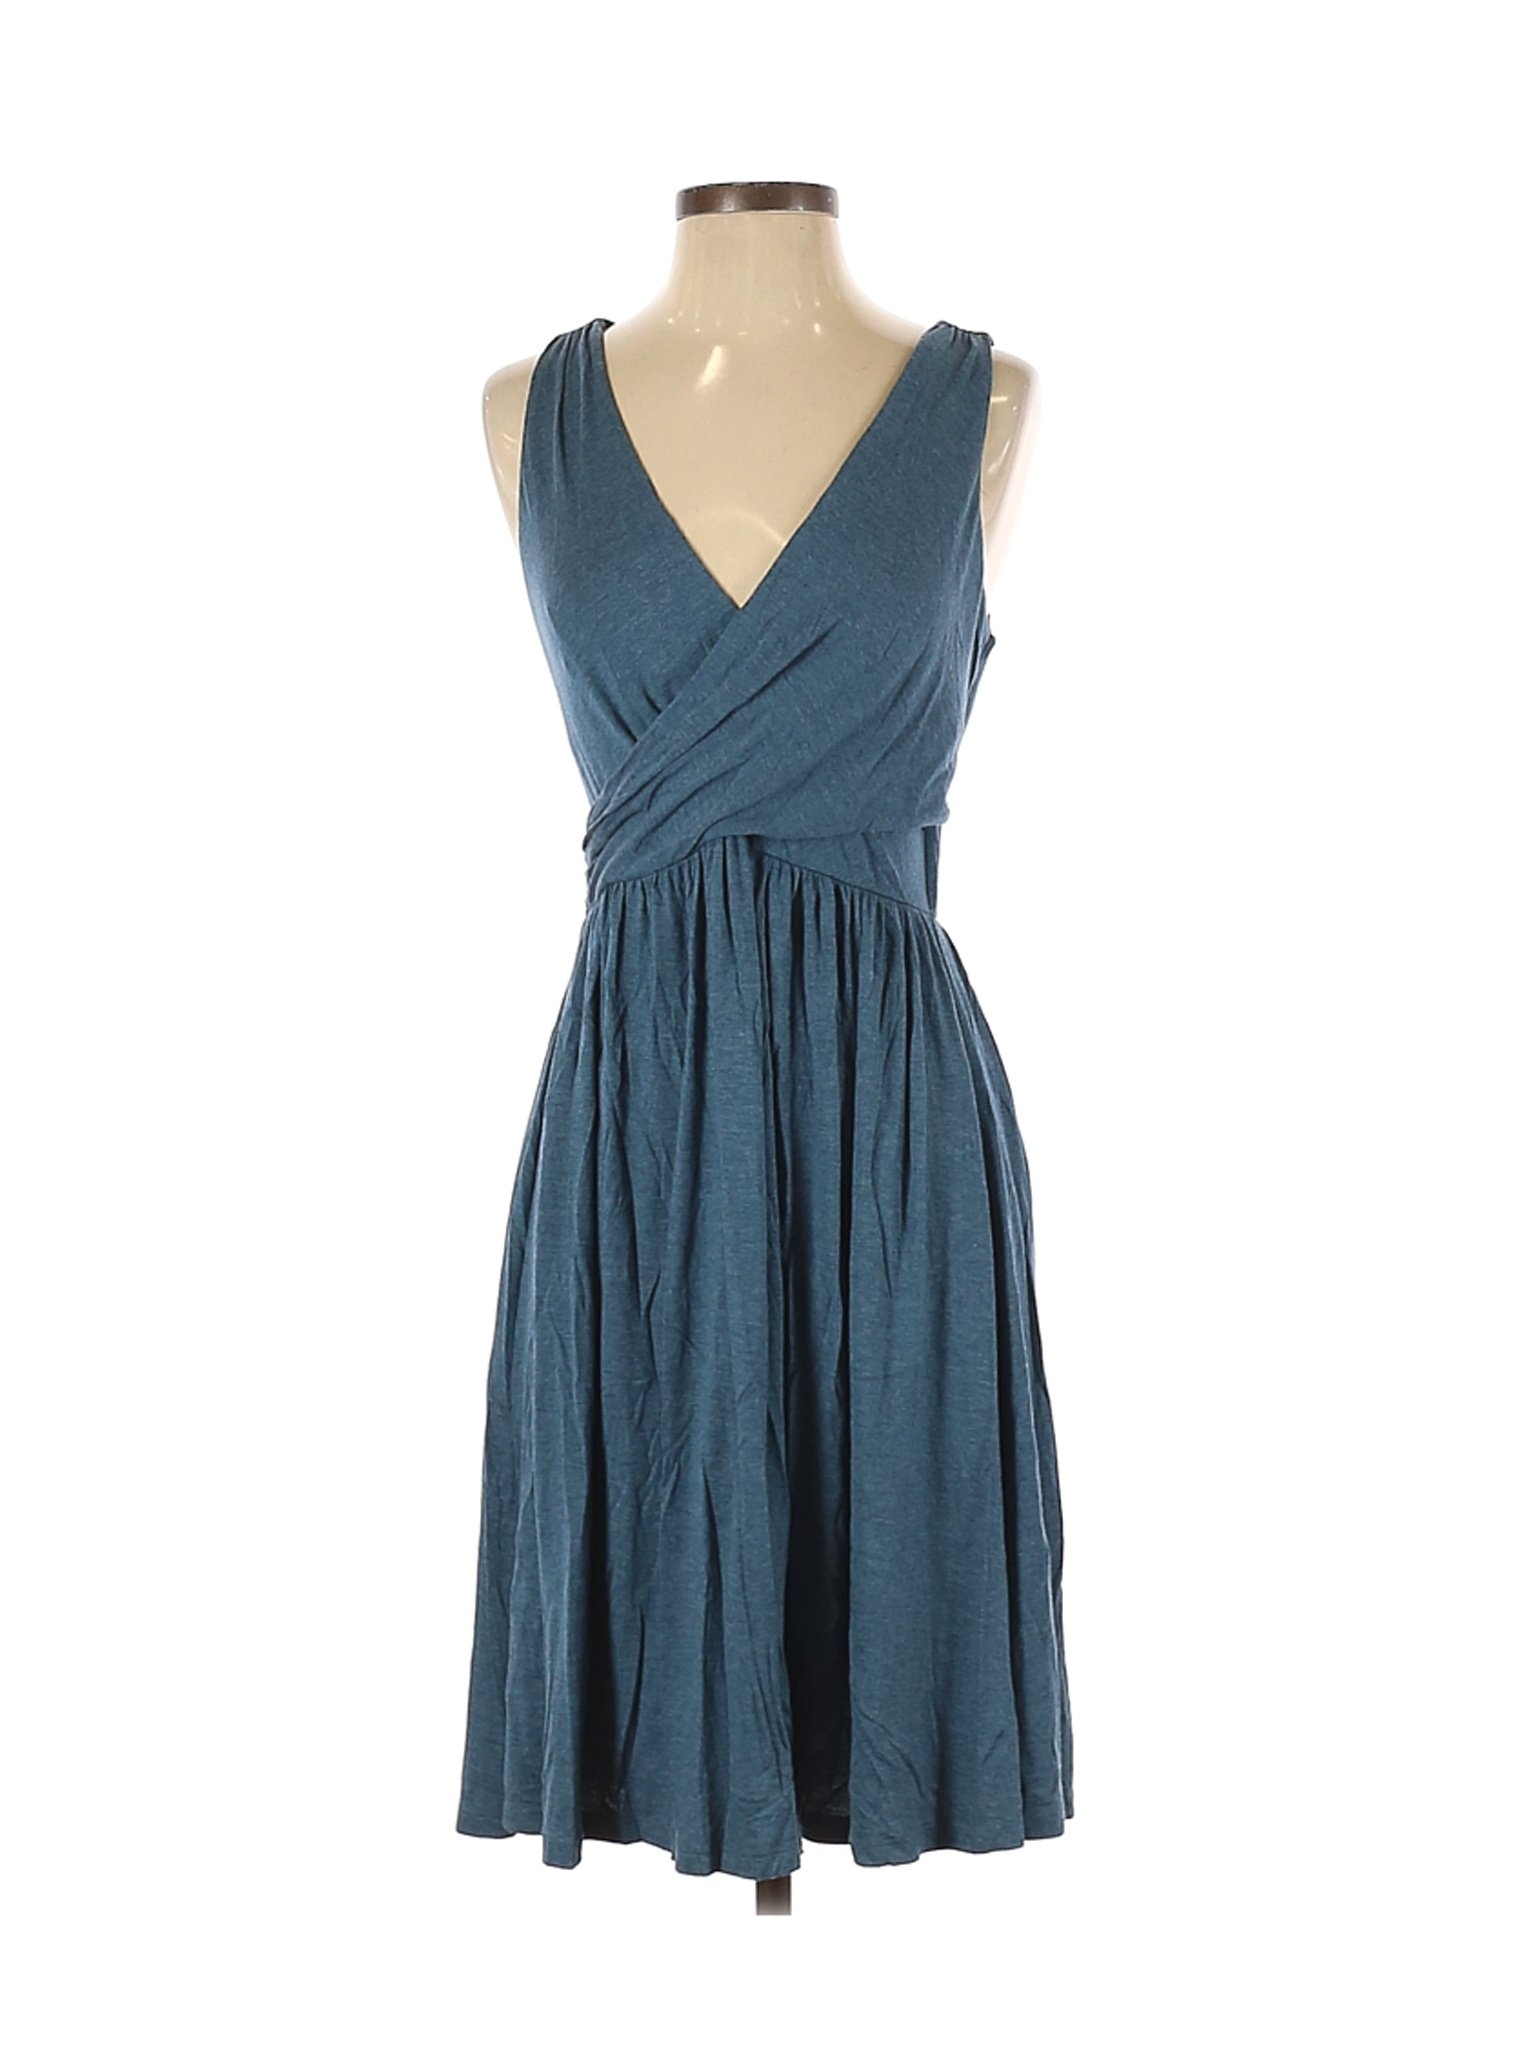 Ann Taylor LOFT Women Green Casual Dress S | eBay